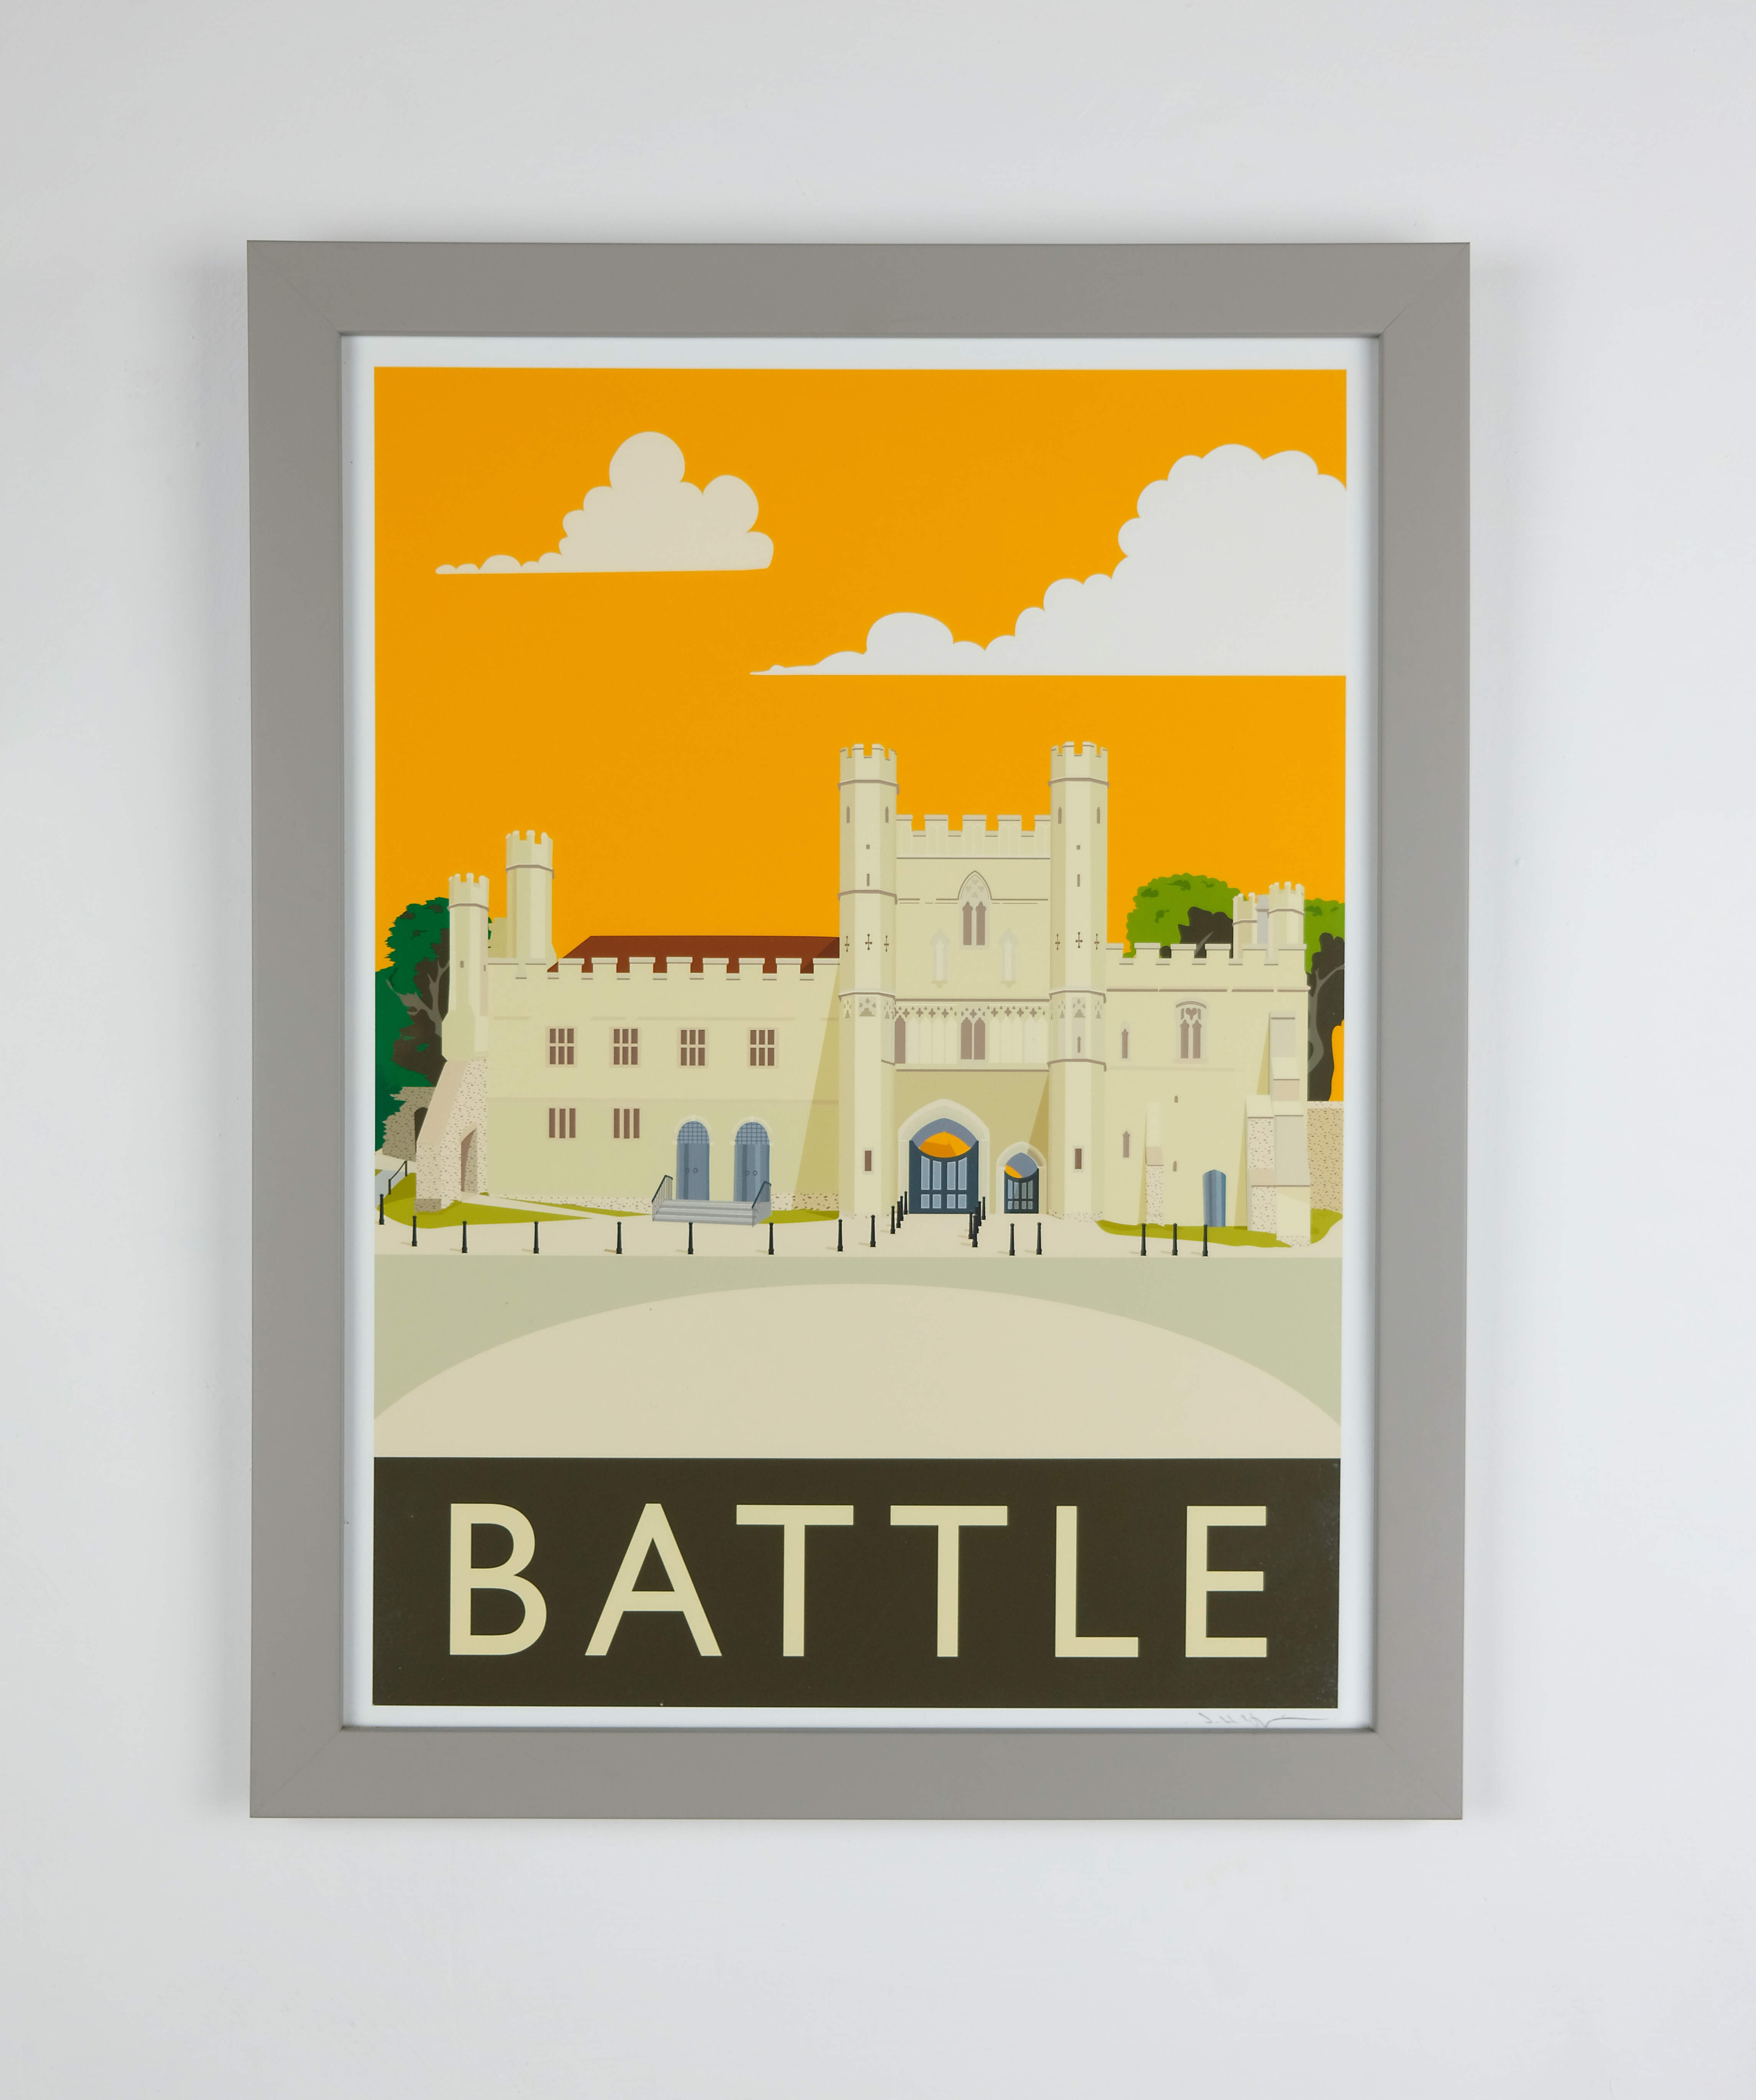 Battle Abbey